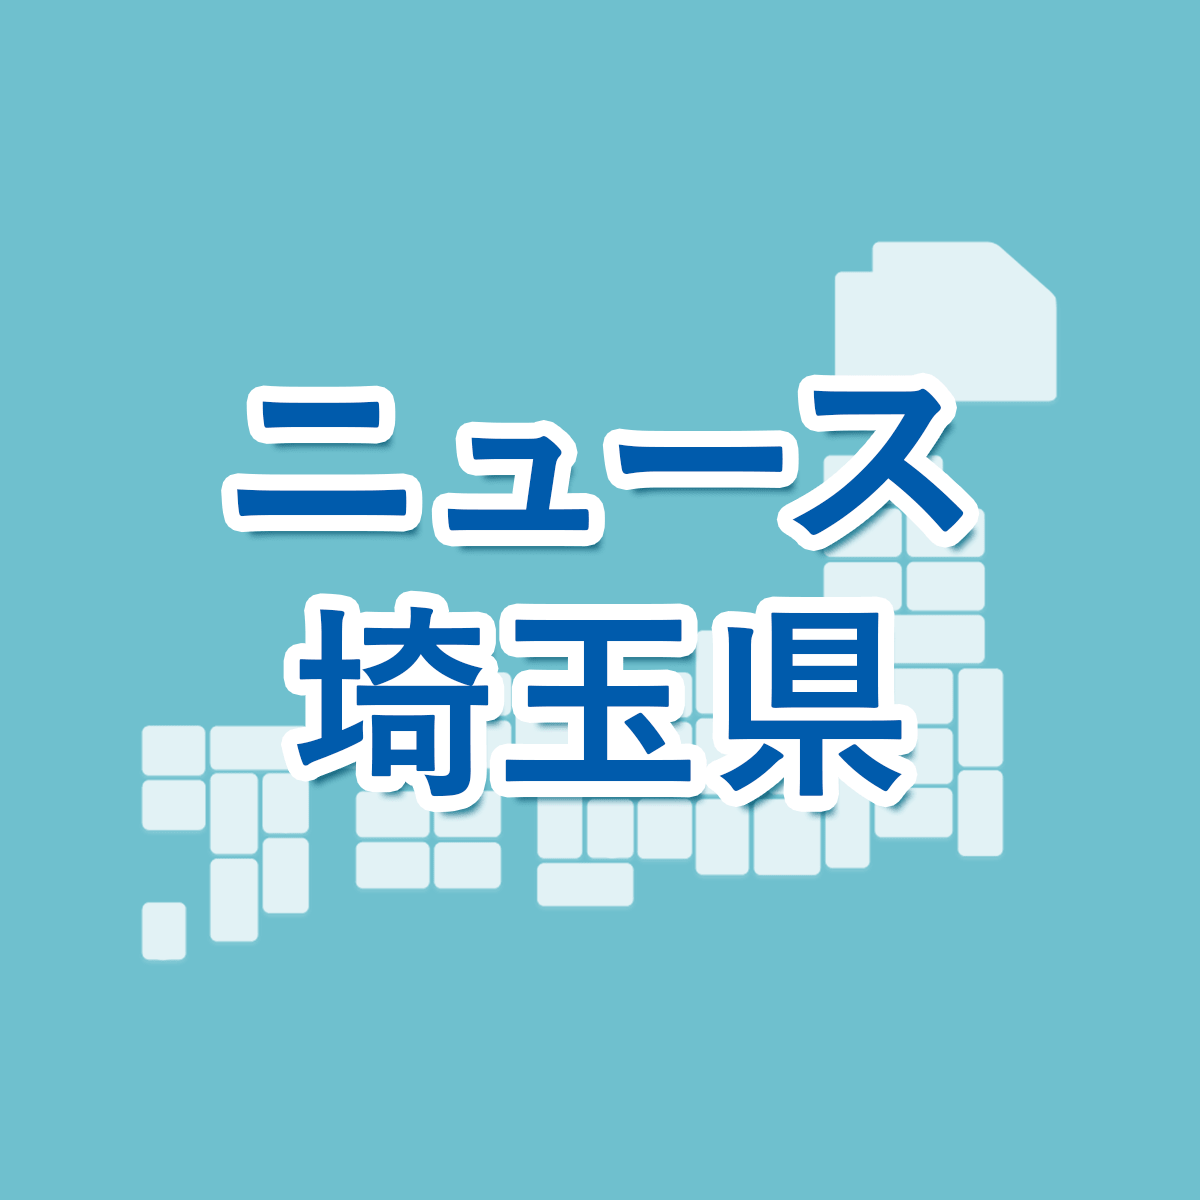 最新 高校 埼玉 倍率 公立 県